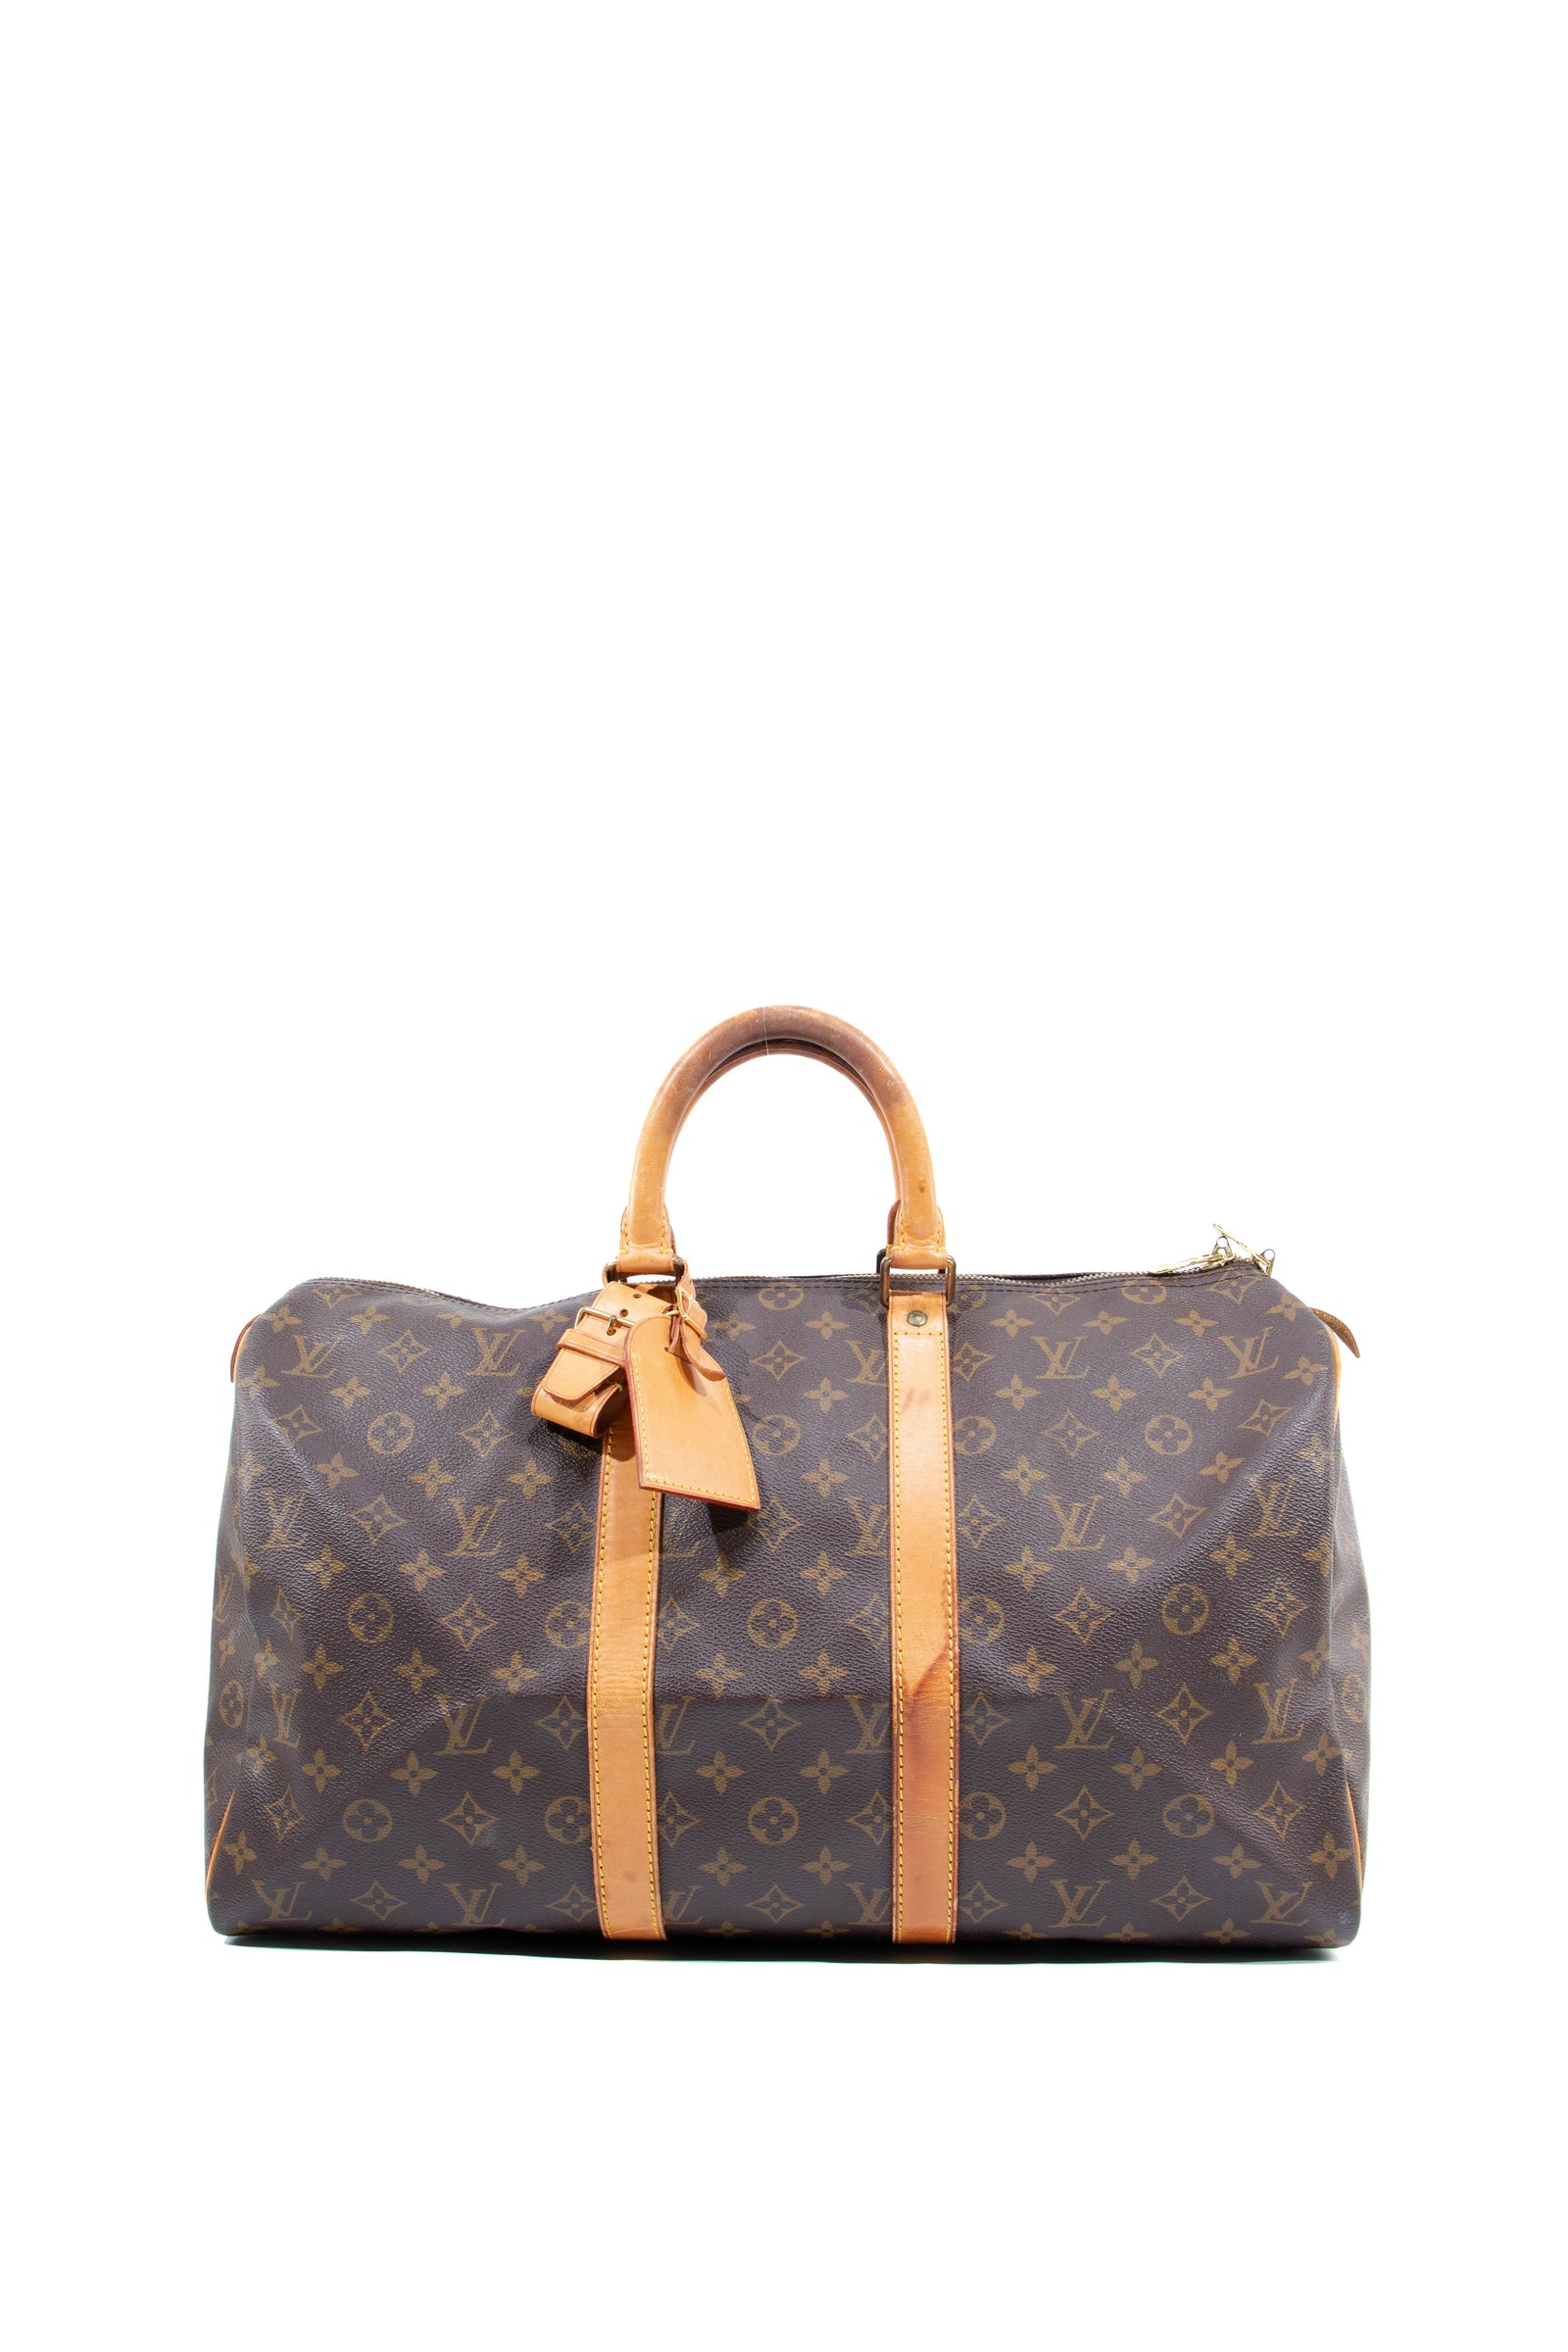 Vtg Louis Vuitton Bag 1940's Holdall Leather 1930's Louis Vuitton Duffle  Bag